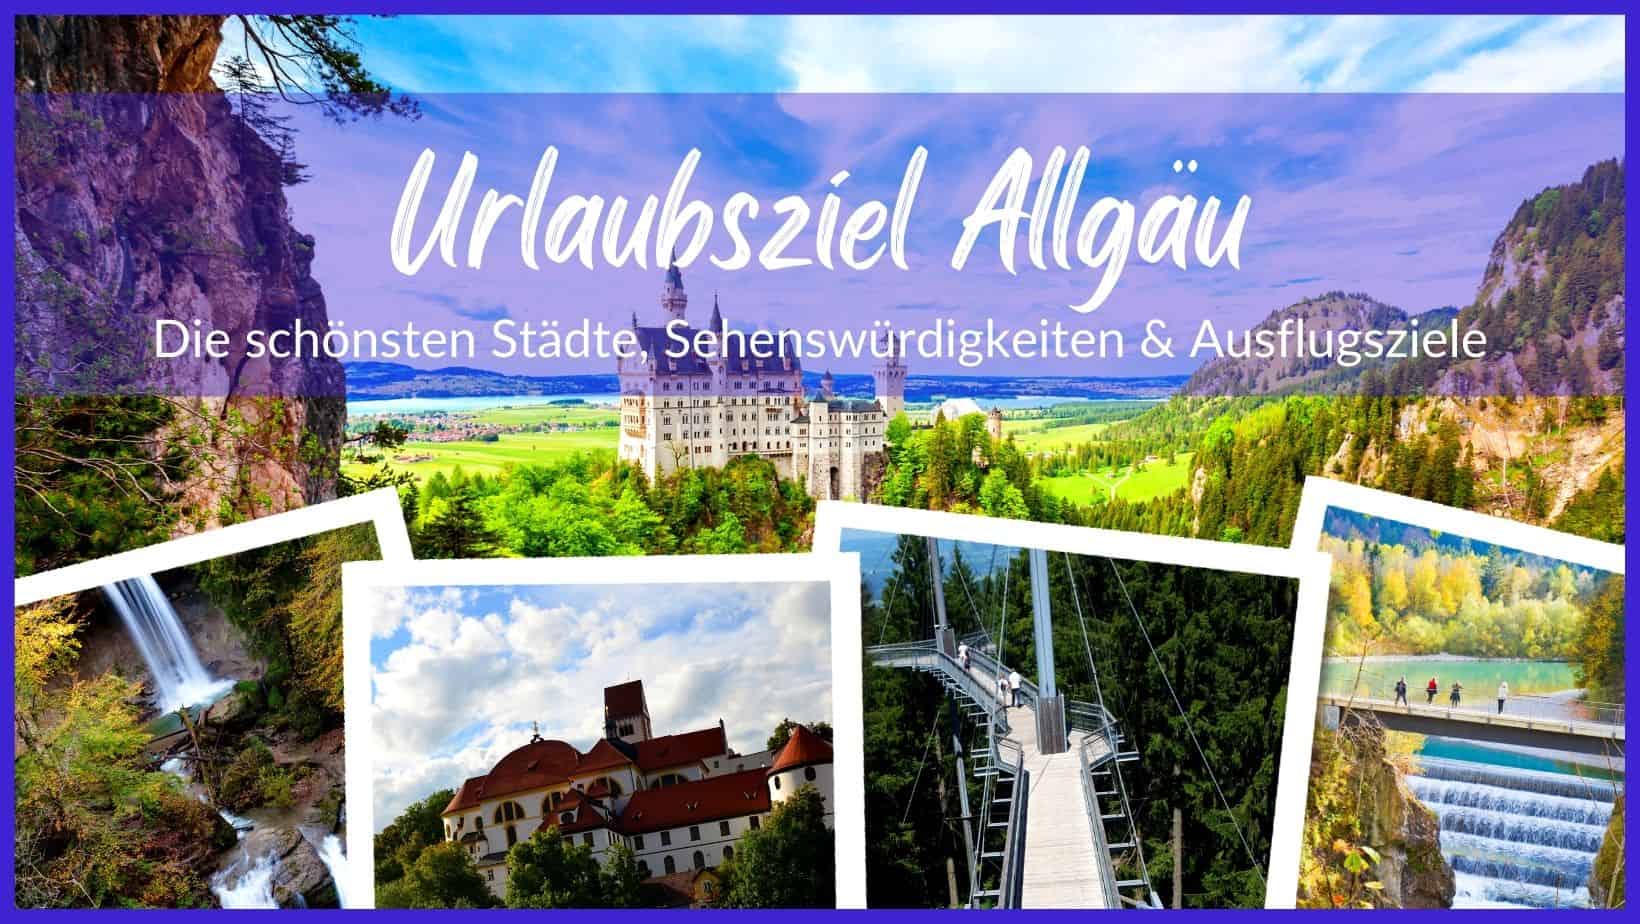 Die schönsten Städte, Sehenswürdigkeiten & Ausflugsziele im Allgäu